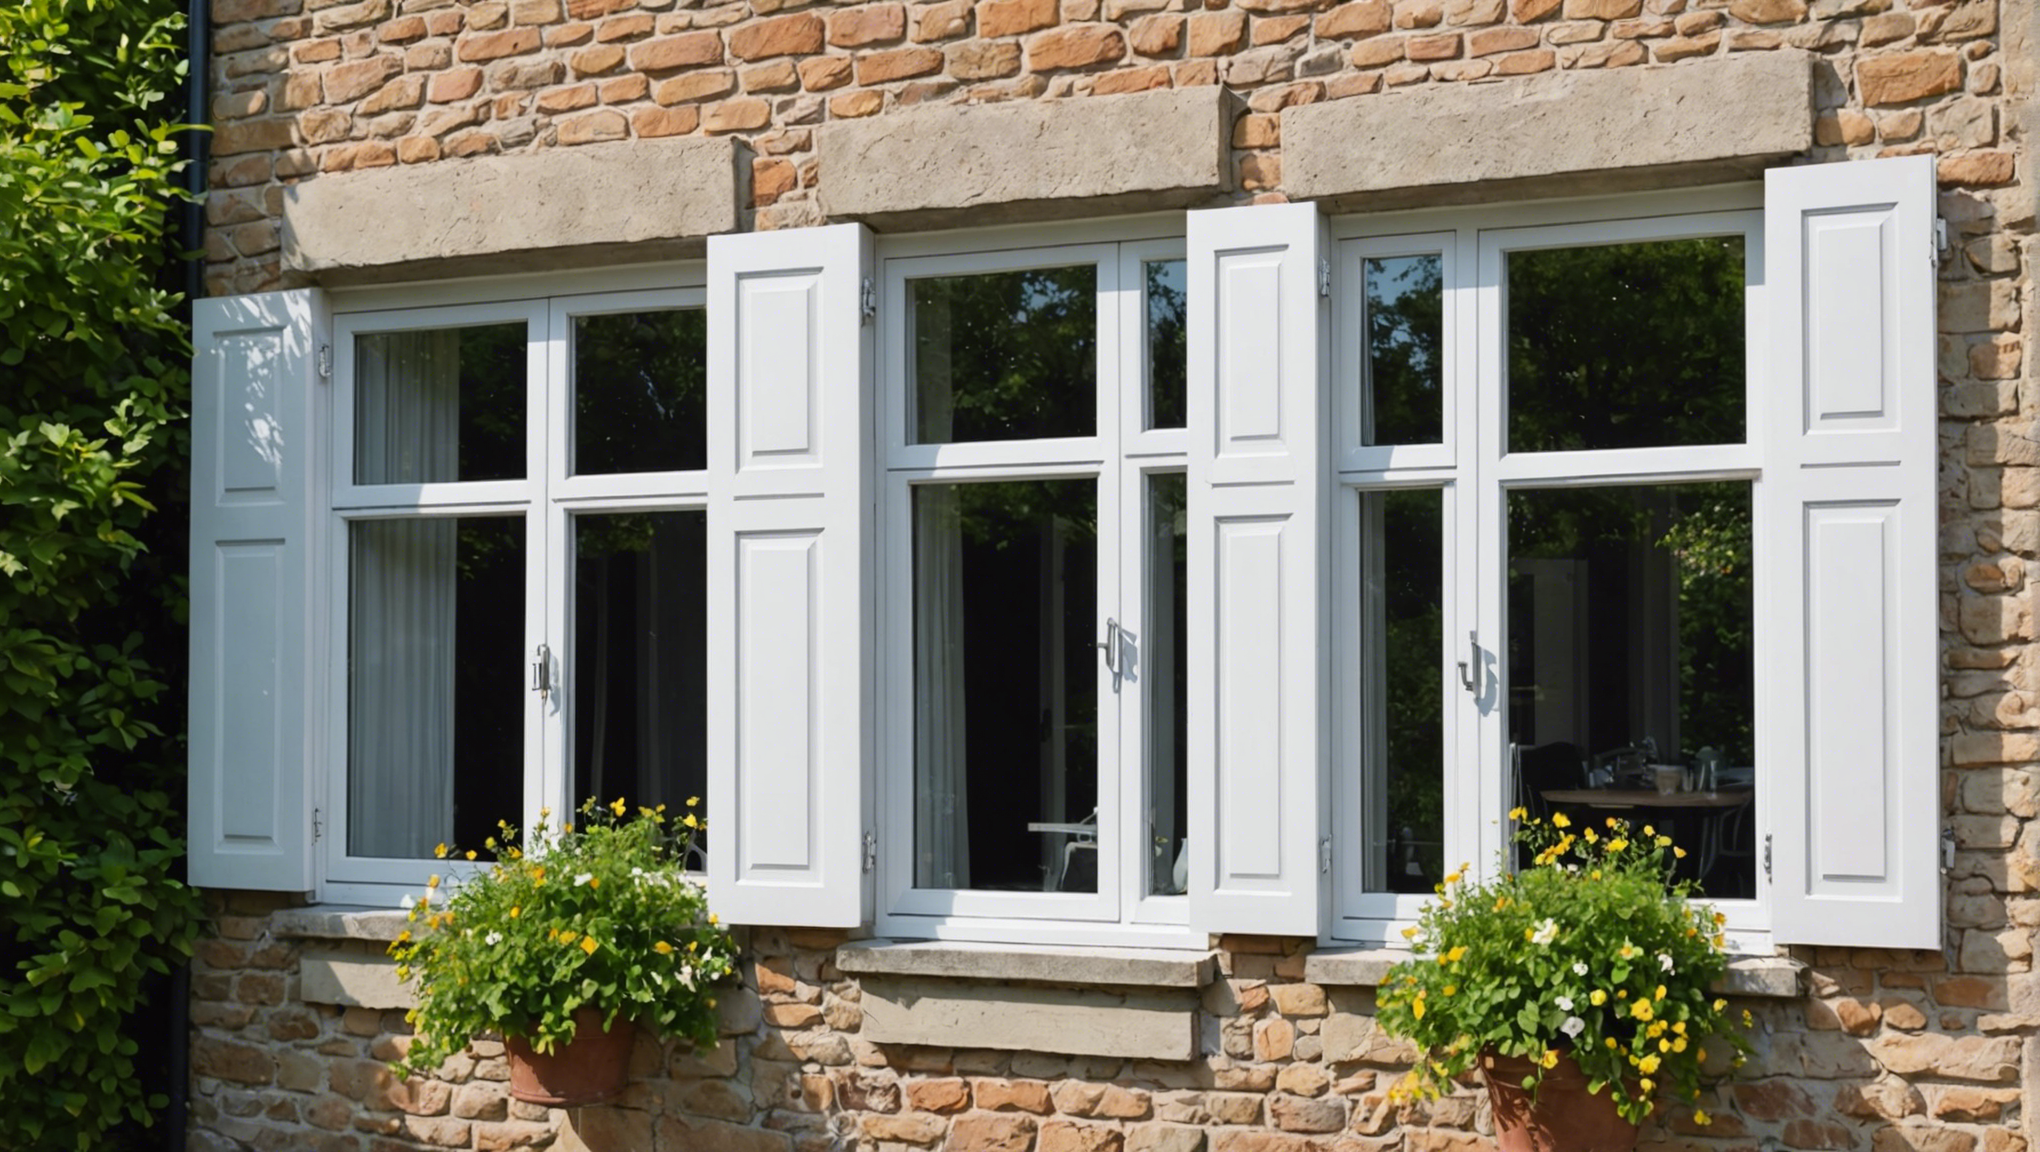 découvrez comment moderniser votre appui de fenêtre extérieur pour une rénovation réussie avec nos conseils pratiques et astuces pour un résultat impeccable.